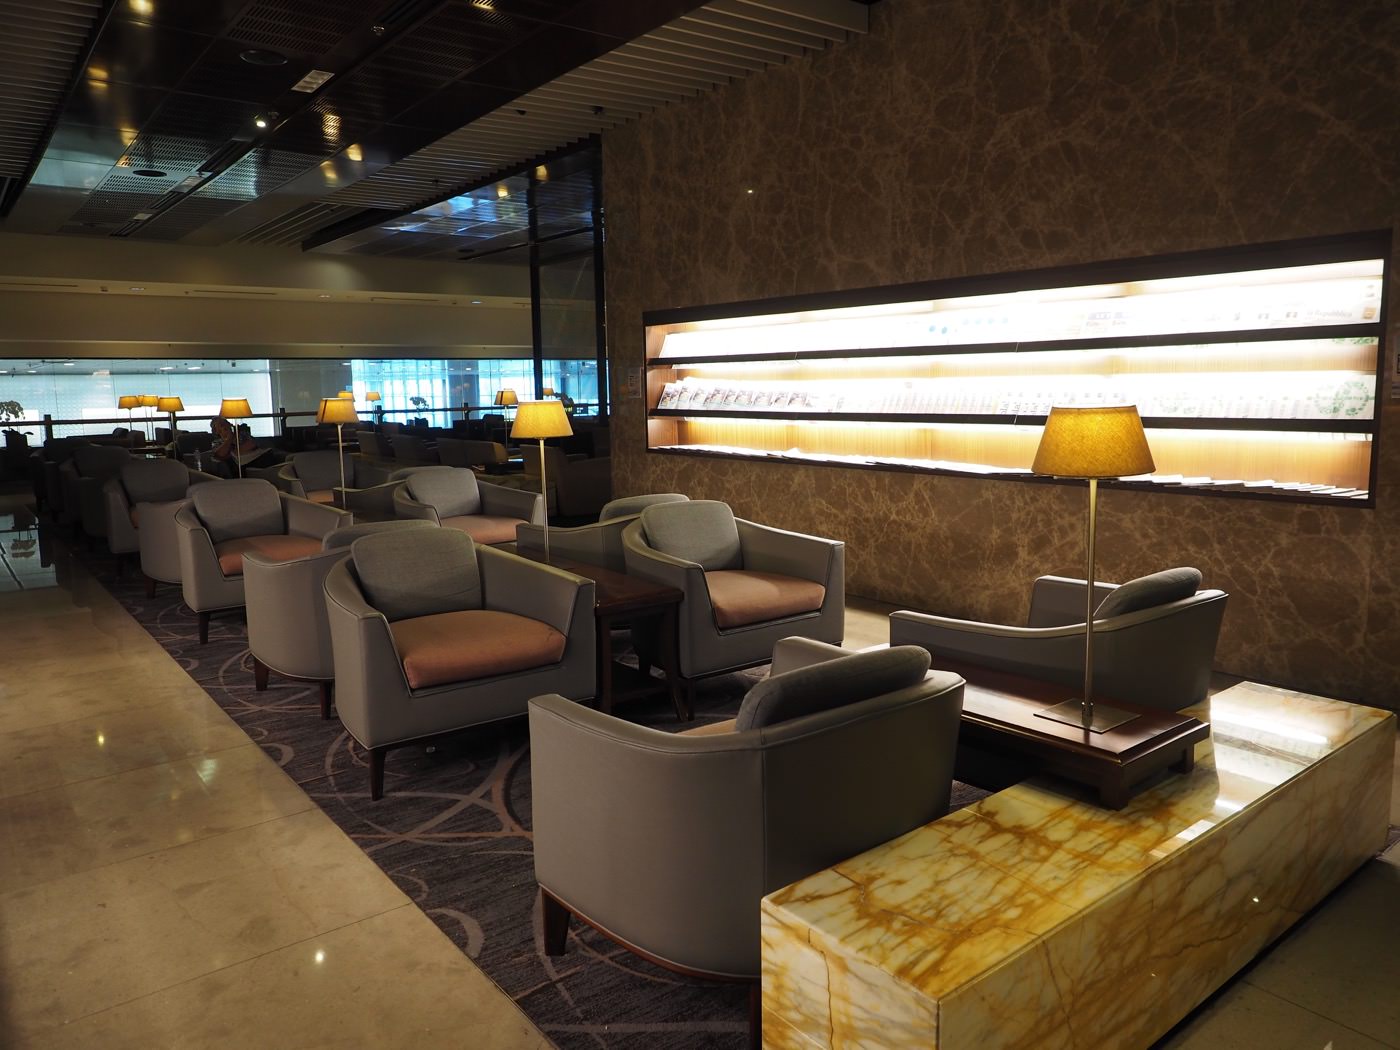 貴賓室 新加坡 SilverKris Lounge 新航商務貴賓室 新加坡樟宜機場三航廈 - 一口冒險 Bitesized Adventure